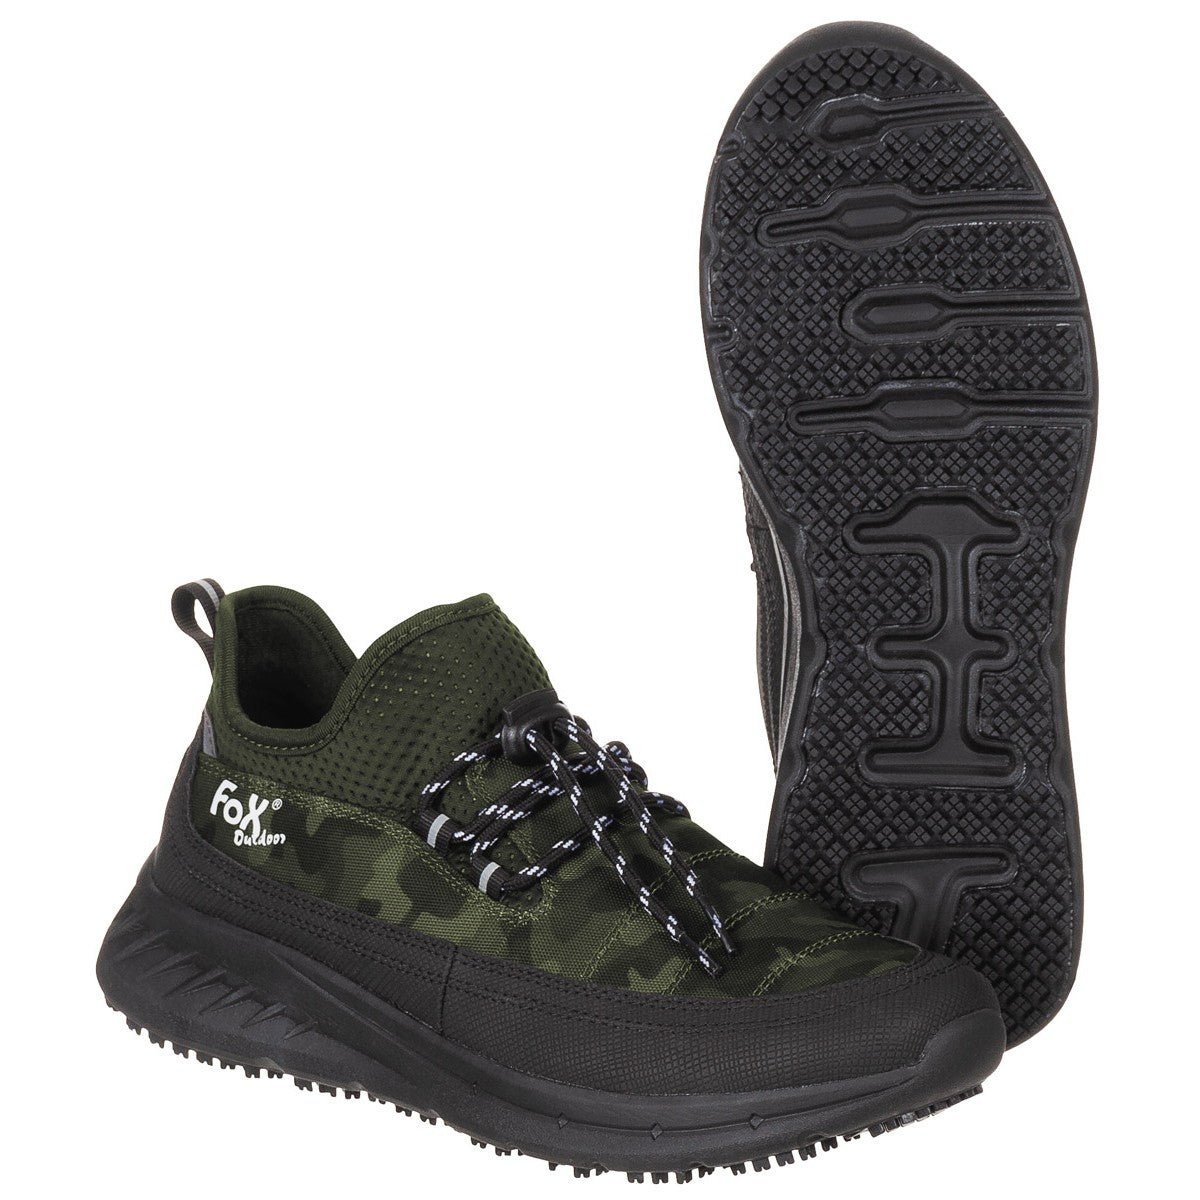 Outdoor Schong, "Sneakers", Camouflage